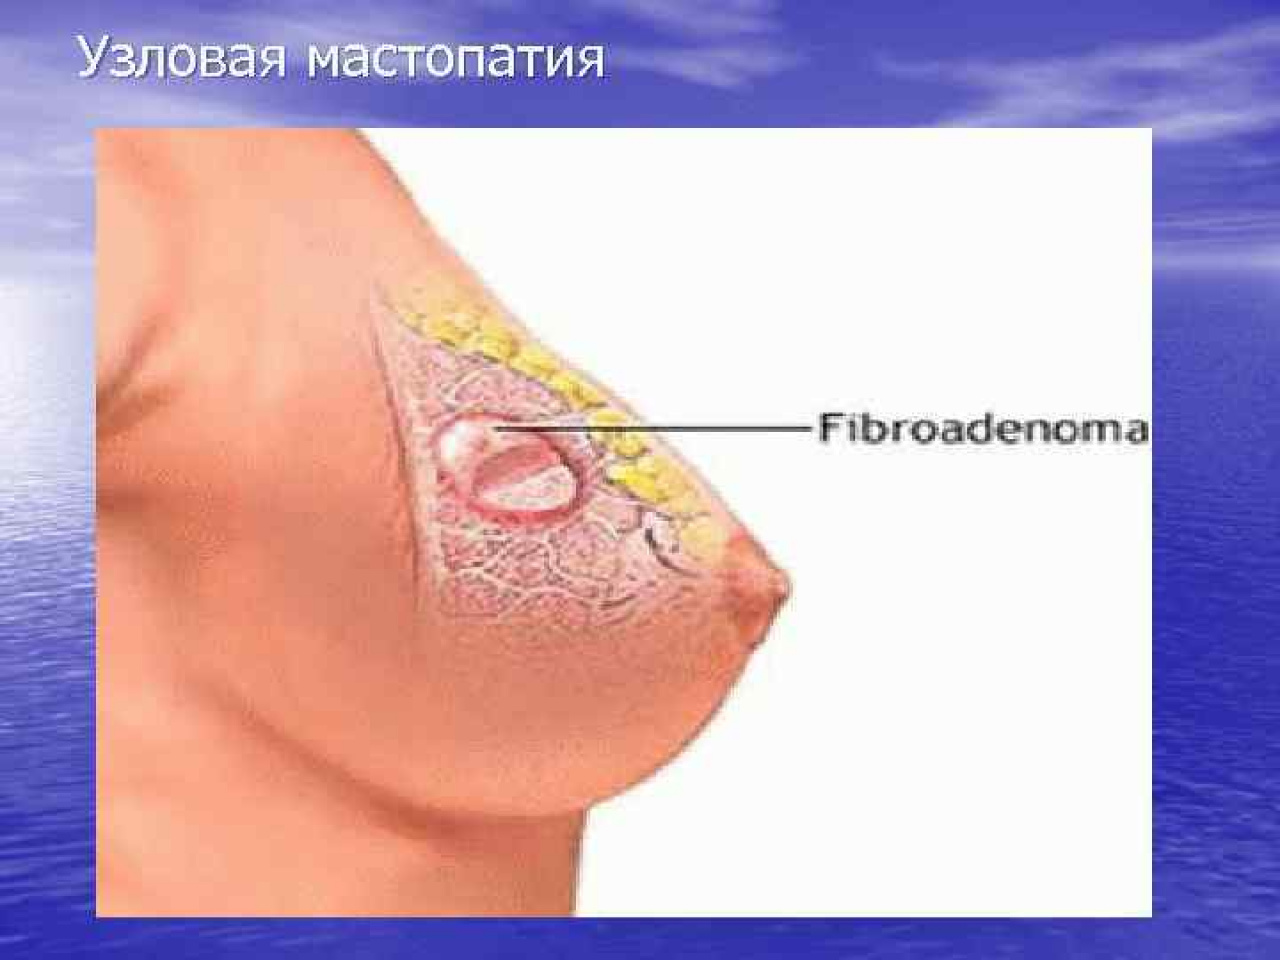 Уплотнение в груди (уплотнение в молочных железах)